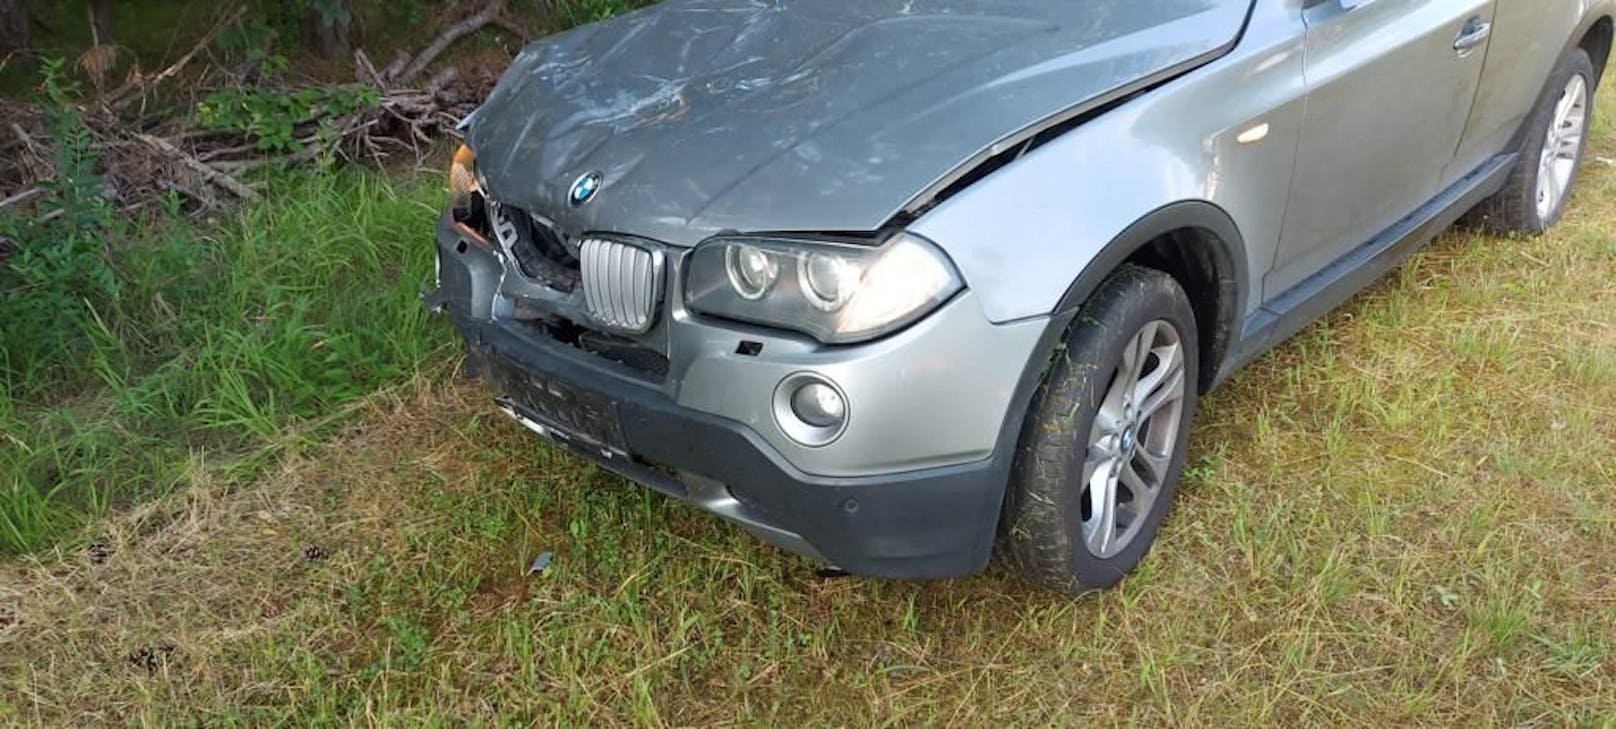 Der beschädigte BMW